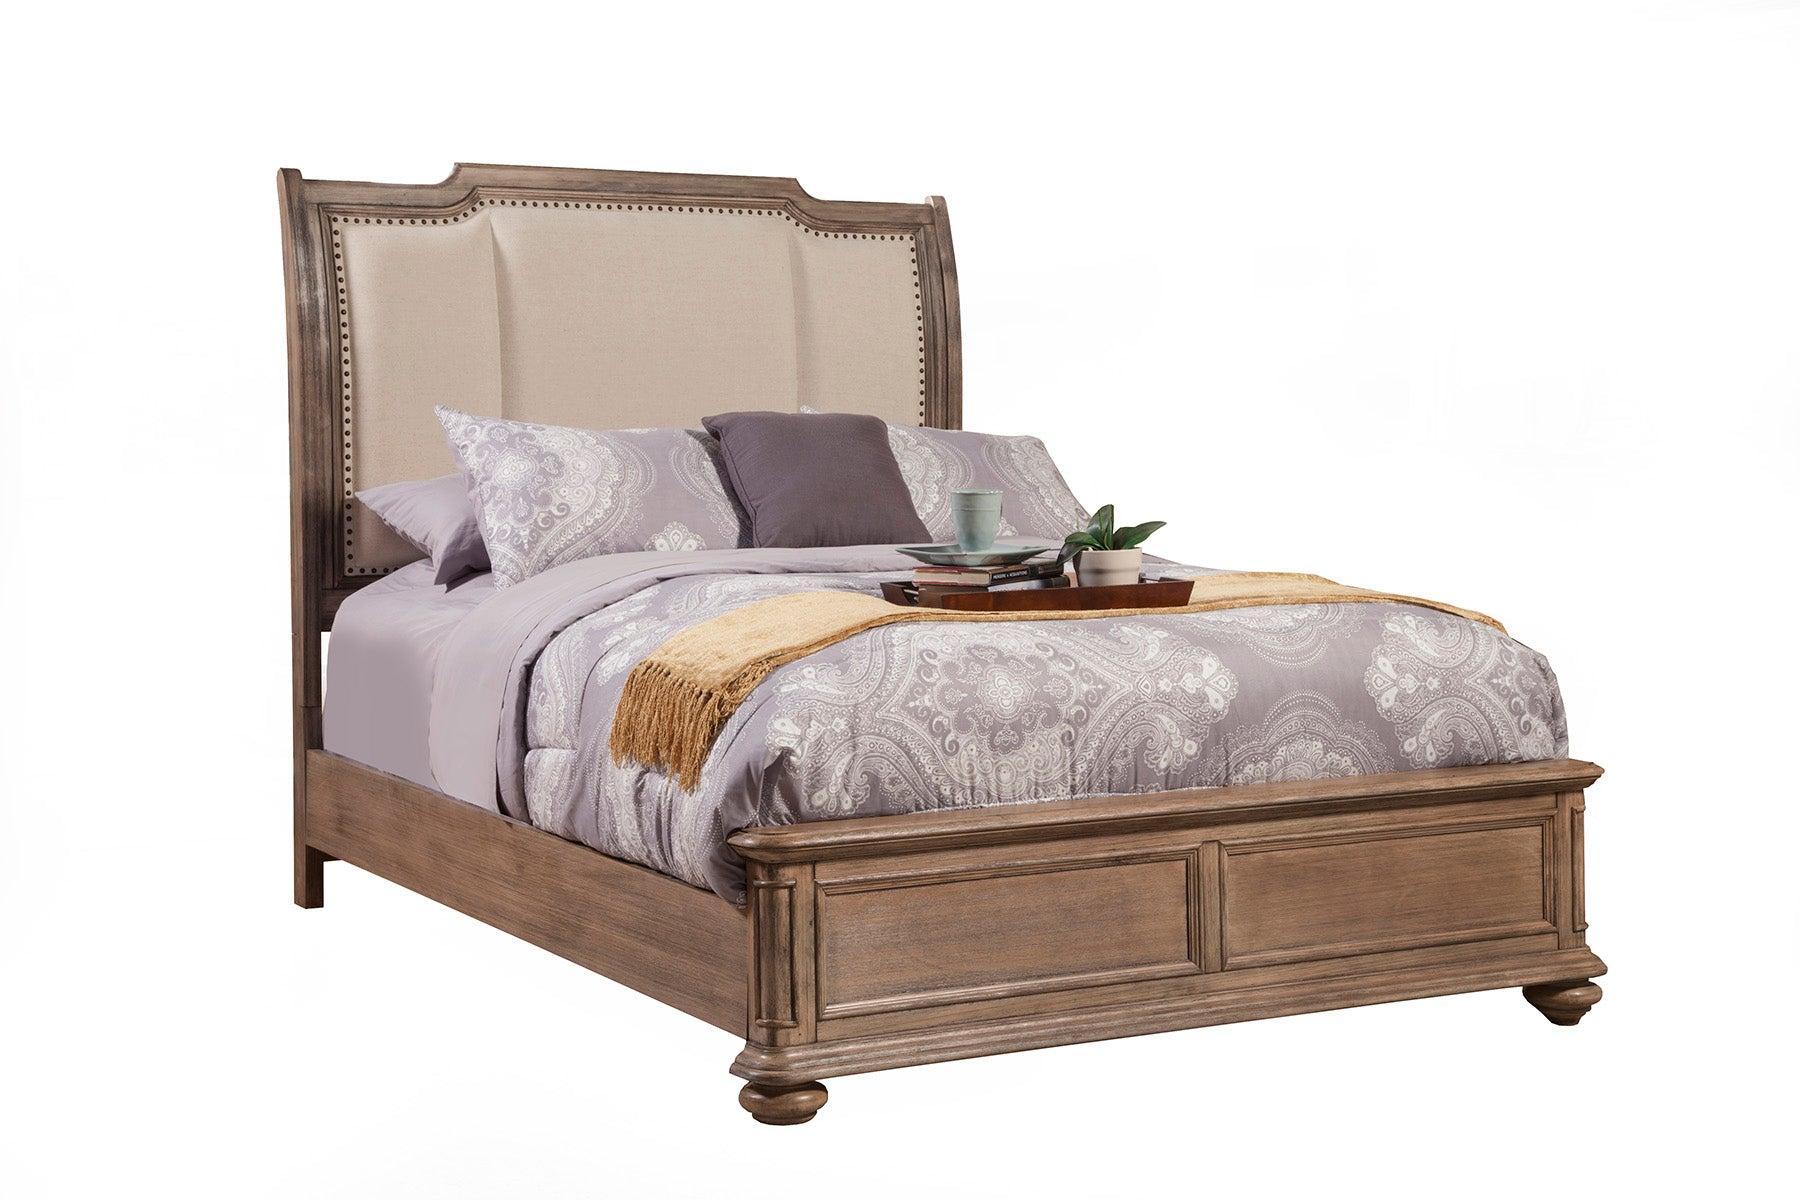 Alpine Furniture MELBOURNE Sleigh Bed